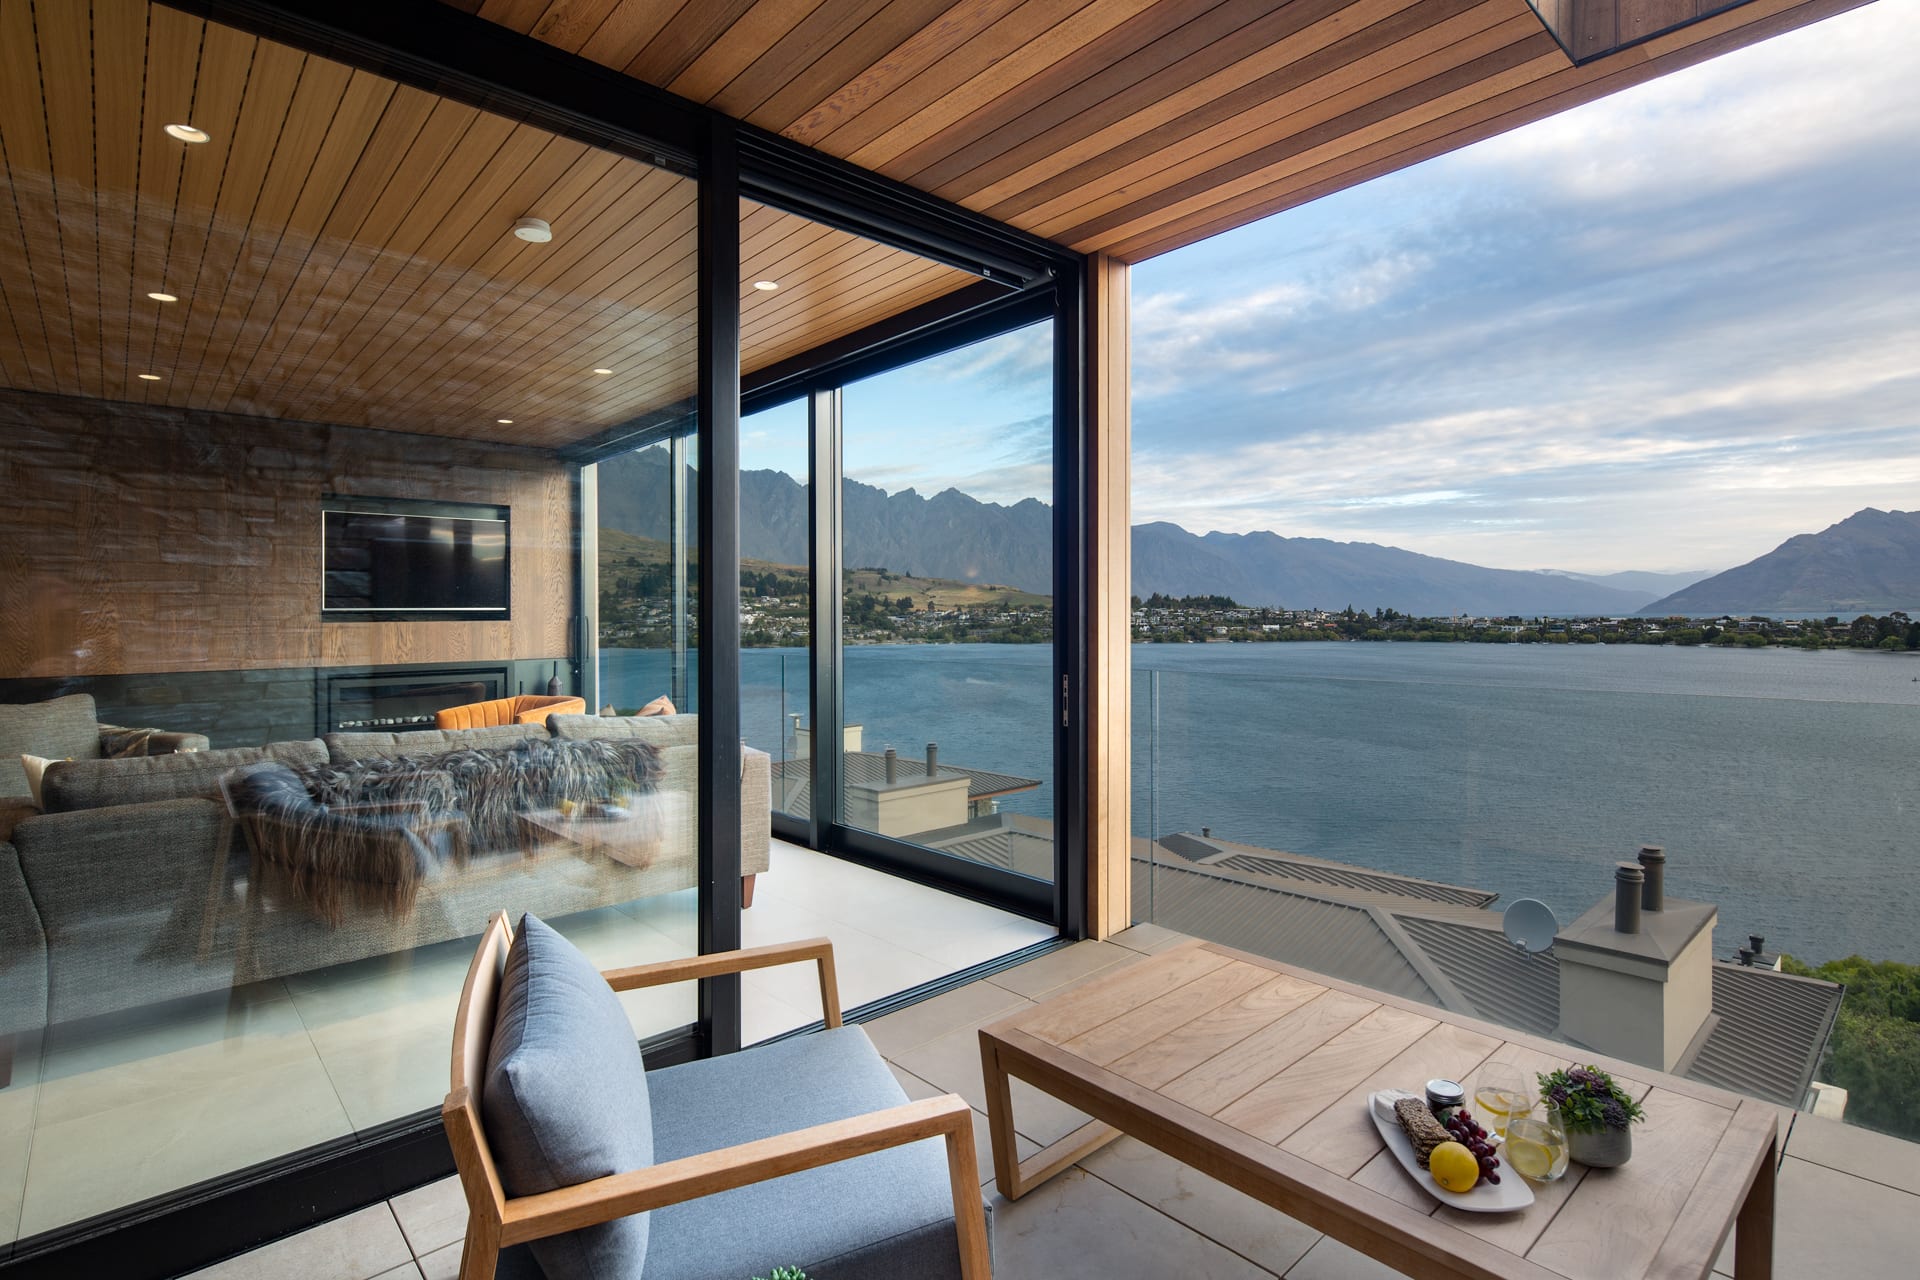 Stunning outdoor patio with views over Lake whakatipu